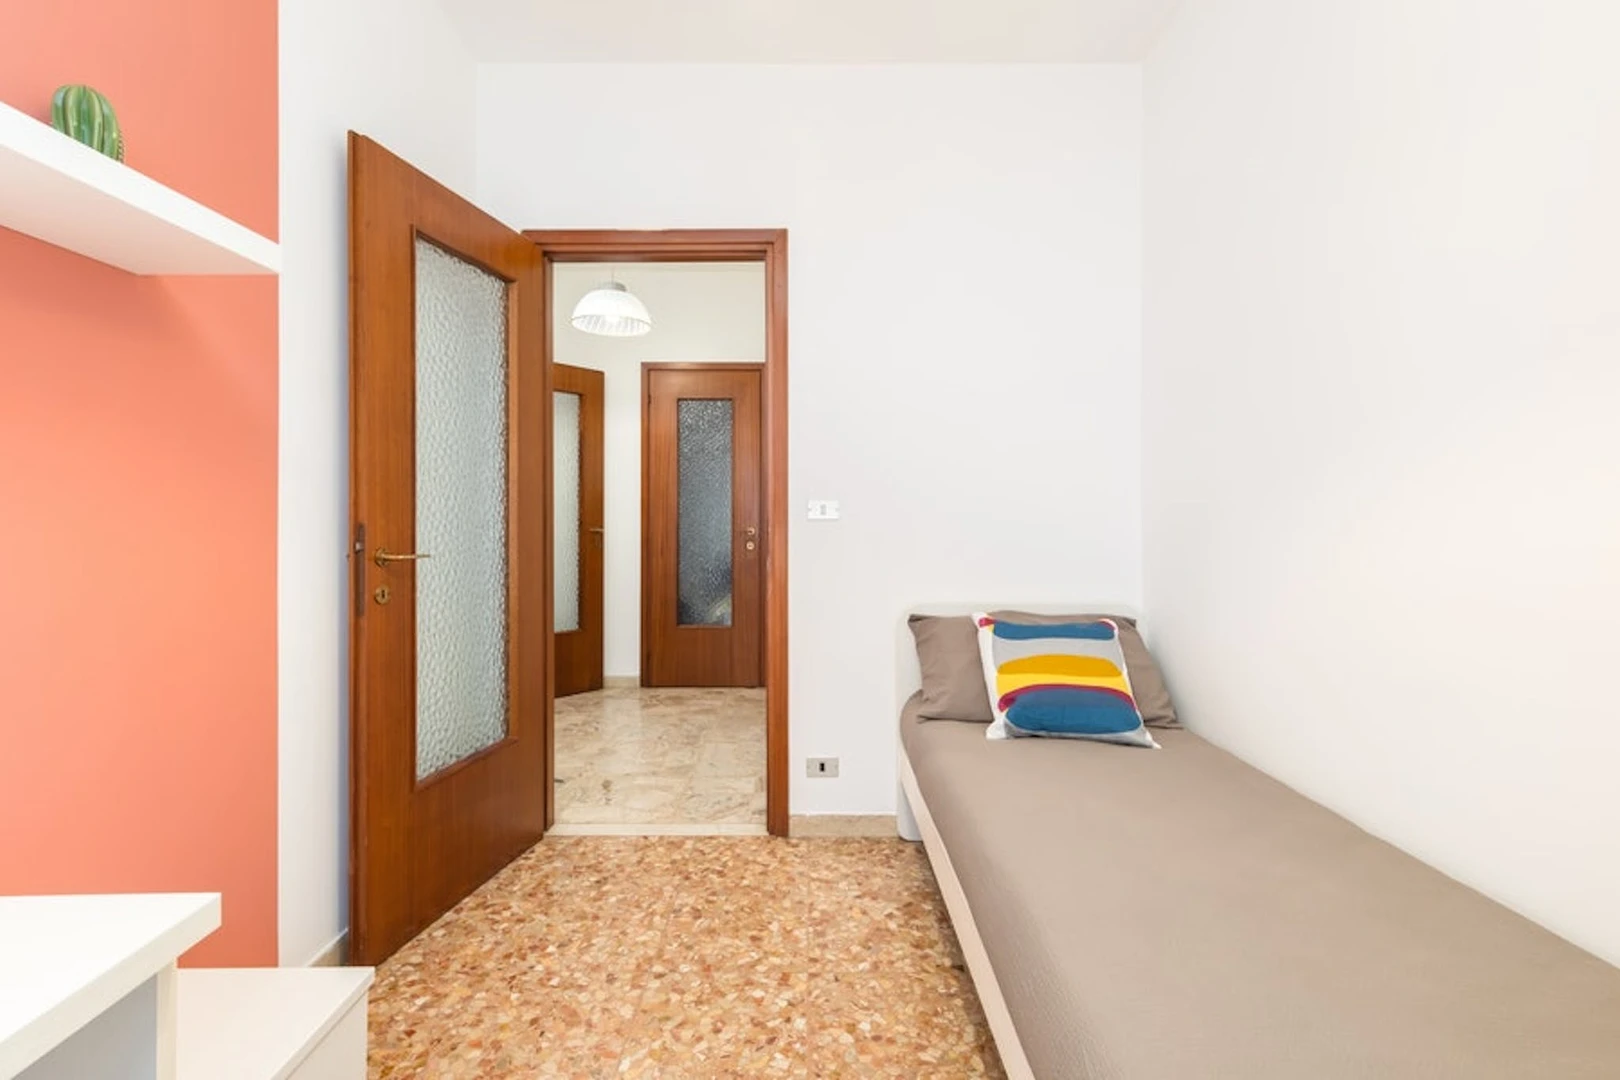 Alquiler de habitaciones por meses en Verona